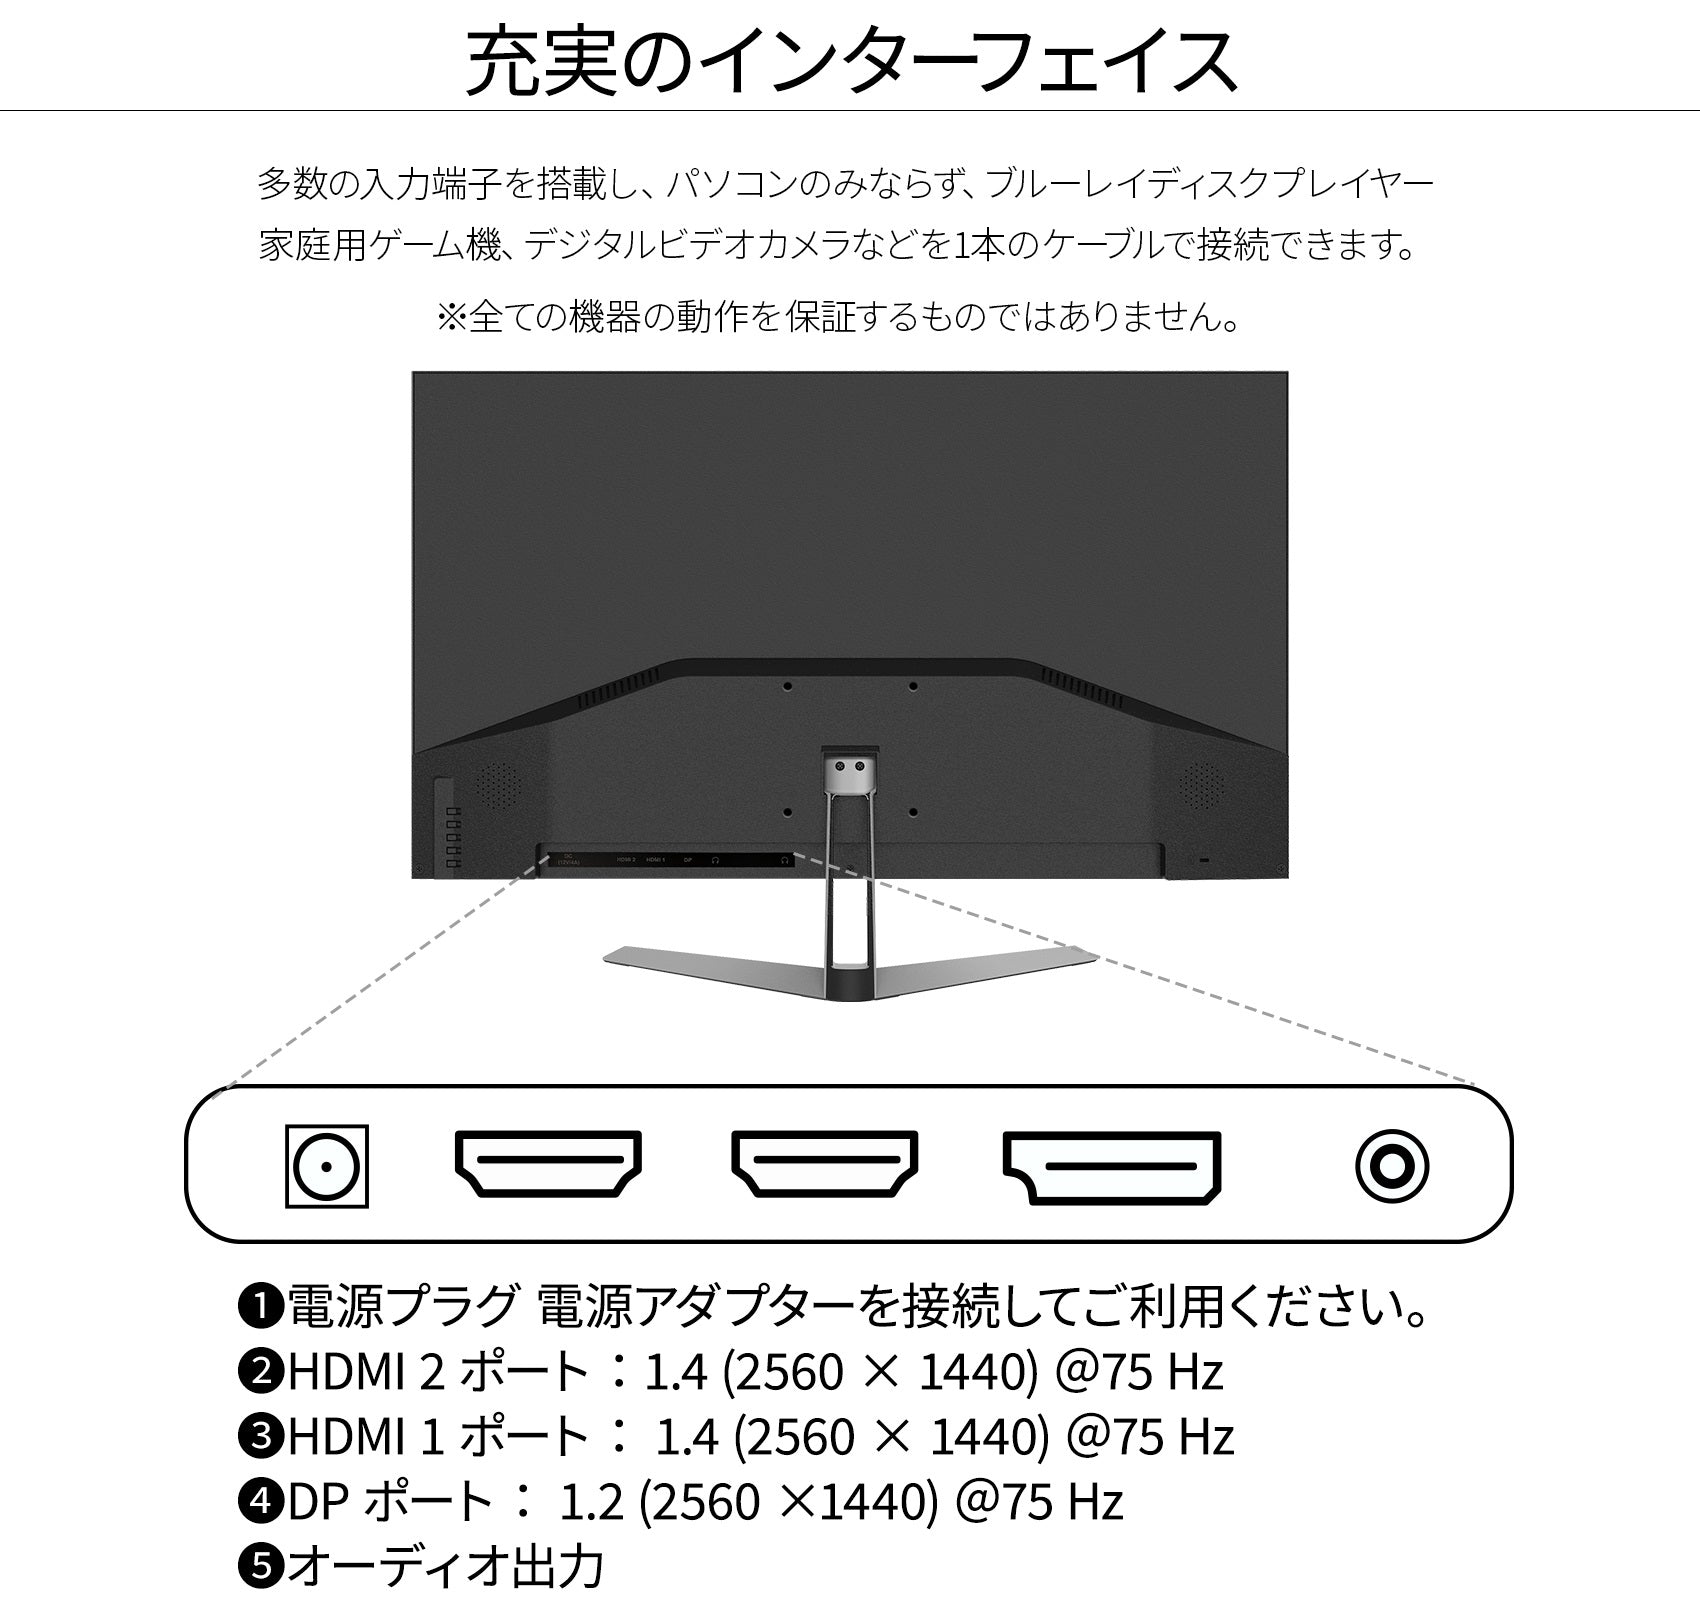 JAPANNEXT IPSパネル 31.5インチ WQHD(2560 x 1440) 液晶モニター JN 